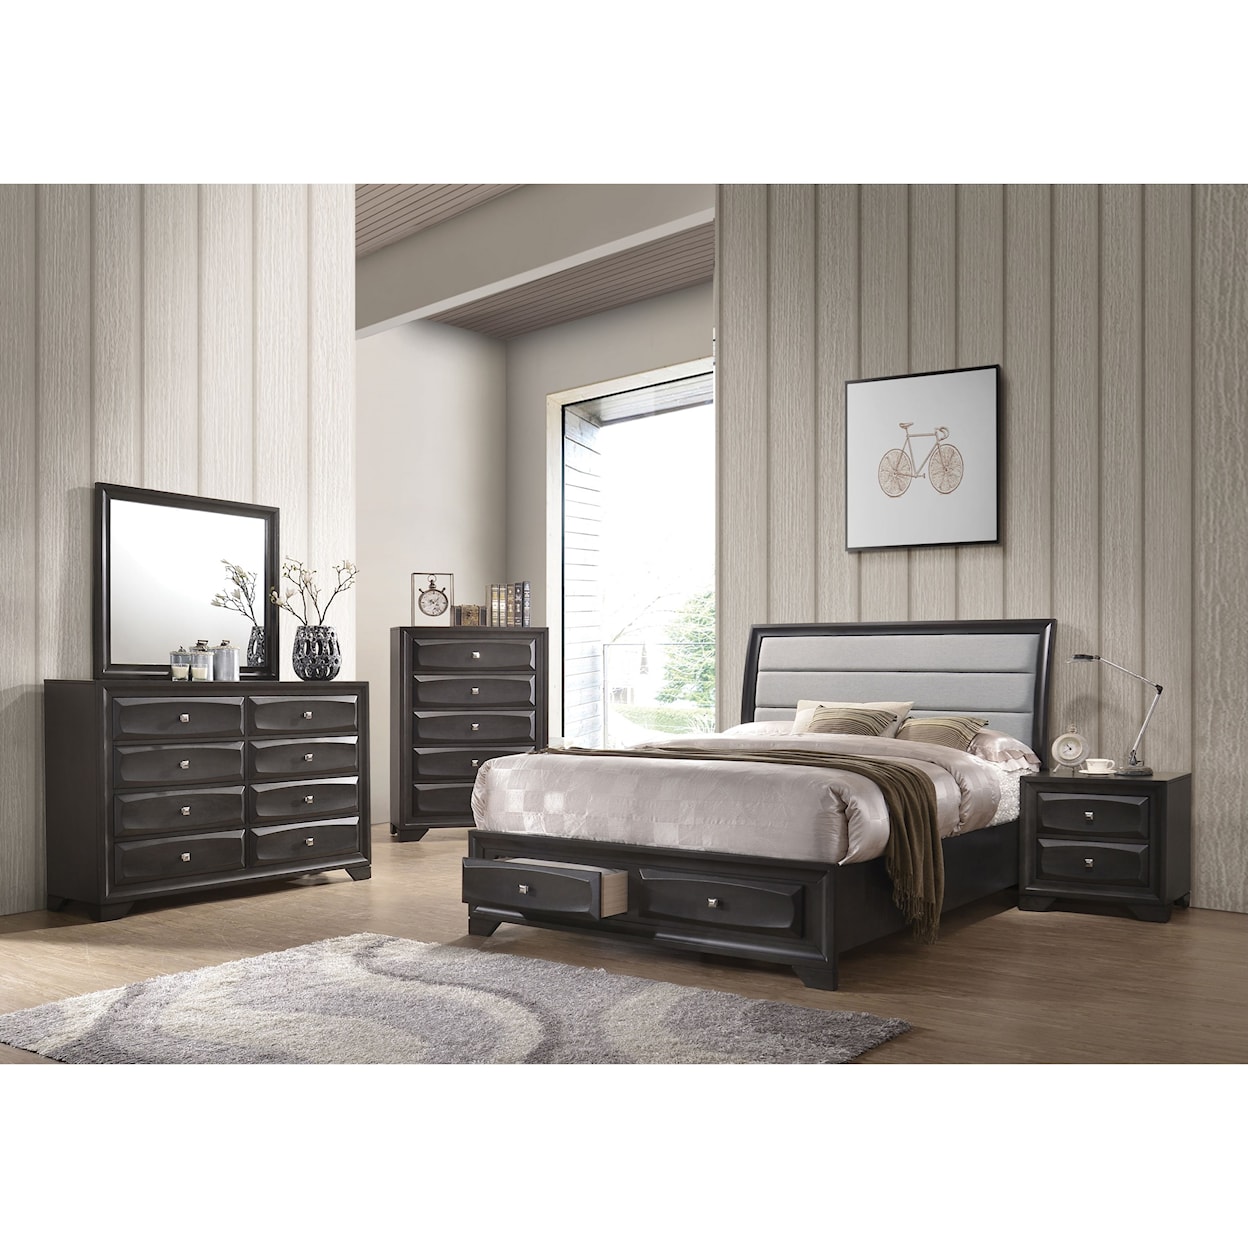 Acme Furniture Soteris Queen Bedroom Group